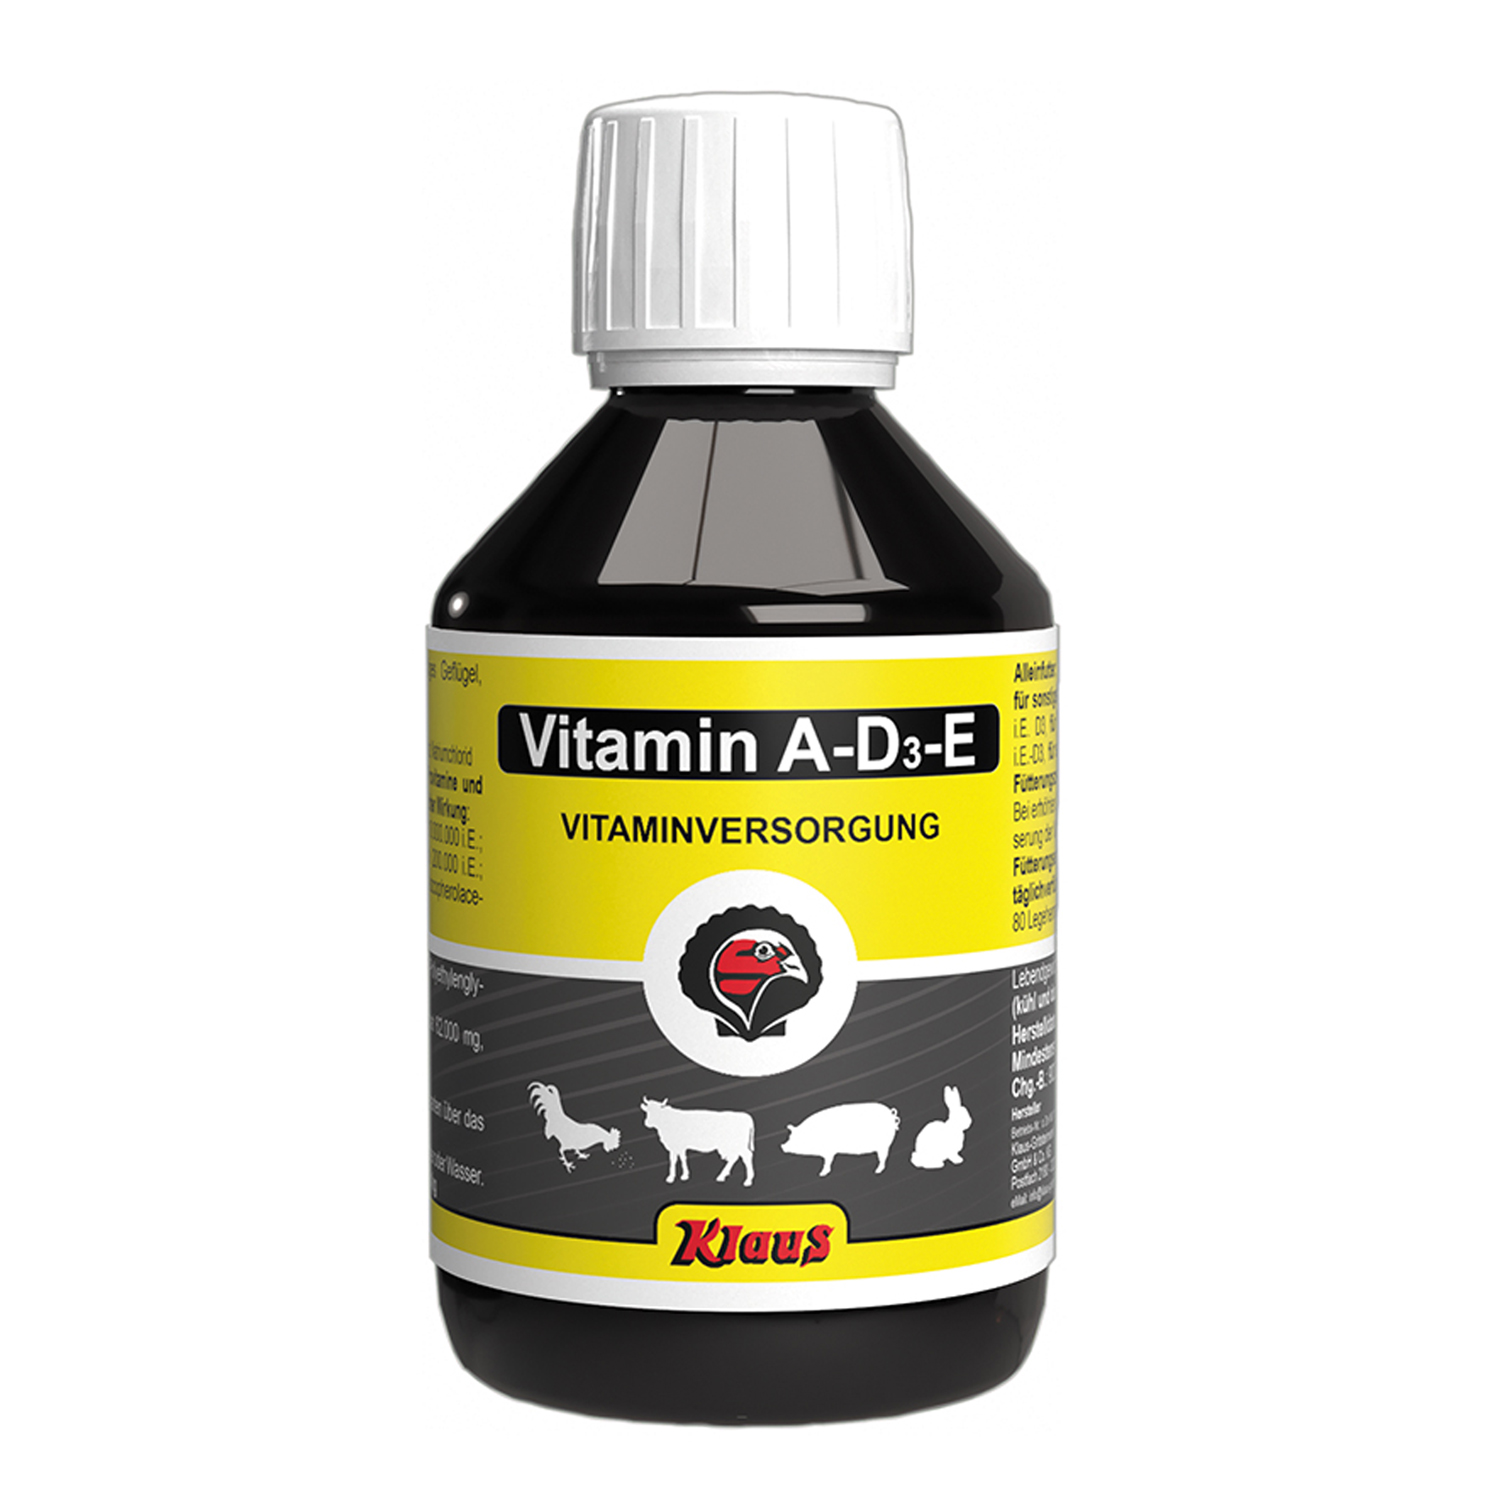 Vitamin A-D3-E 500ml